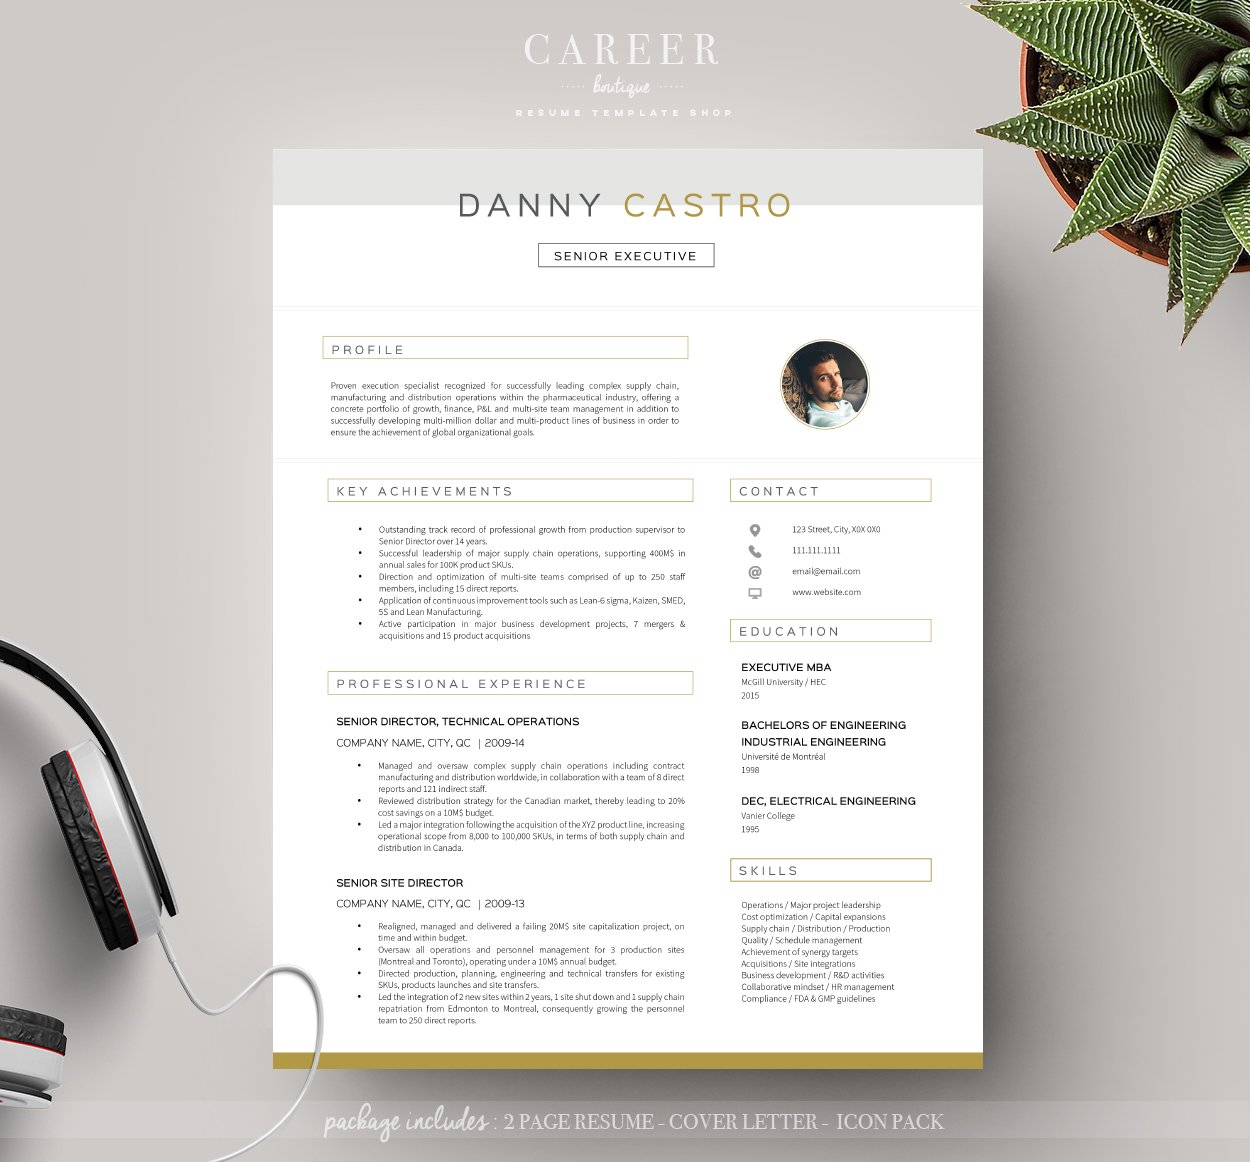 Modern Resume & Coverletter Template cover image.